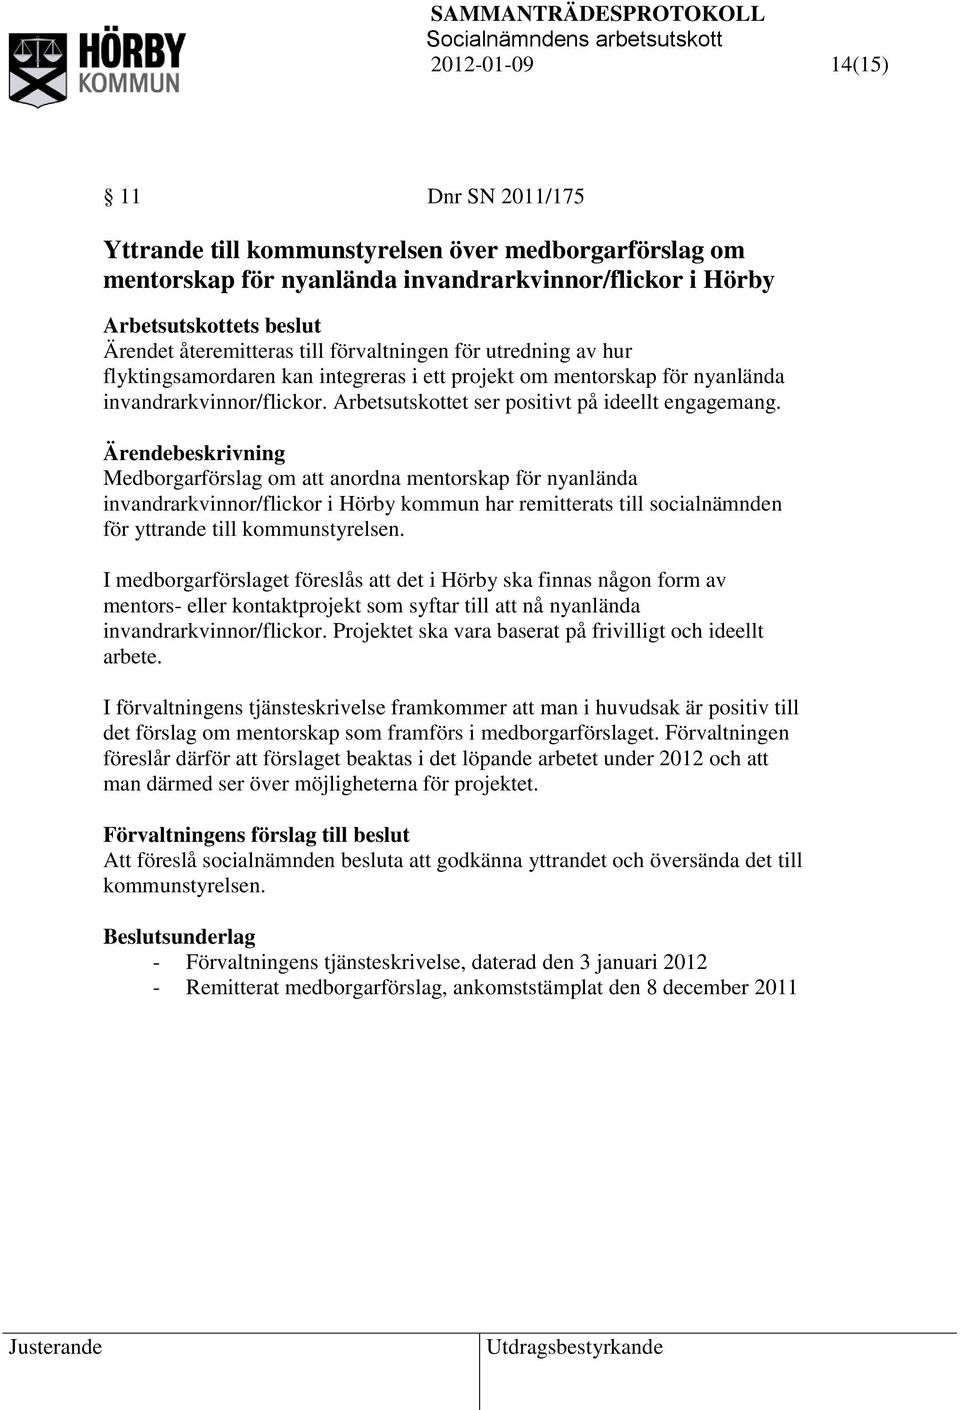 Medborgarförslag om att anordna mentorskap för nyanlända invandrarkvinnor/flickor i Hörby kommun har remitterats till socialnämnden för yttrande till kommunstyrelsen.